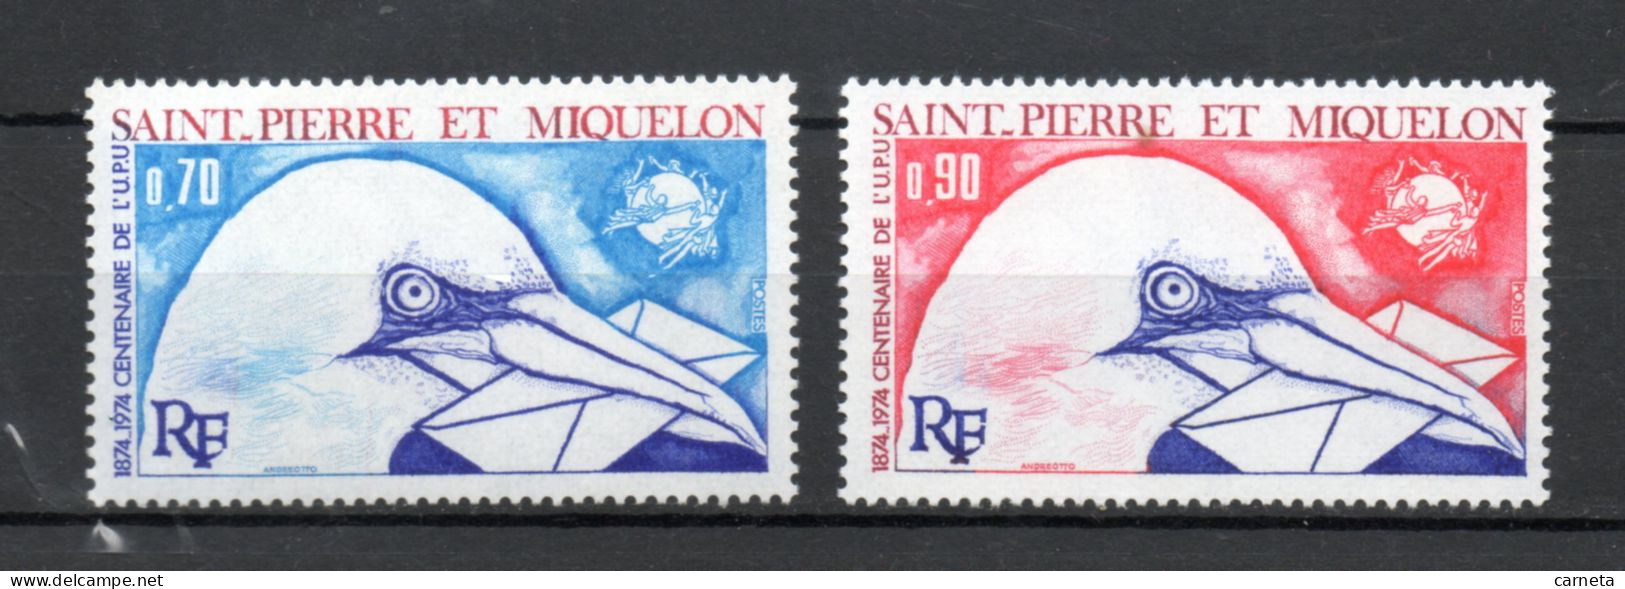 SAINT PIERRE ET MIQUELON N° 434 + 435    NEUFS SANS CHARNIERE COTE  15.00€    OISEAUX ANIMAUX FAUNE UPU VOIR DESCRIPTION - Unused Stamps